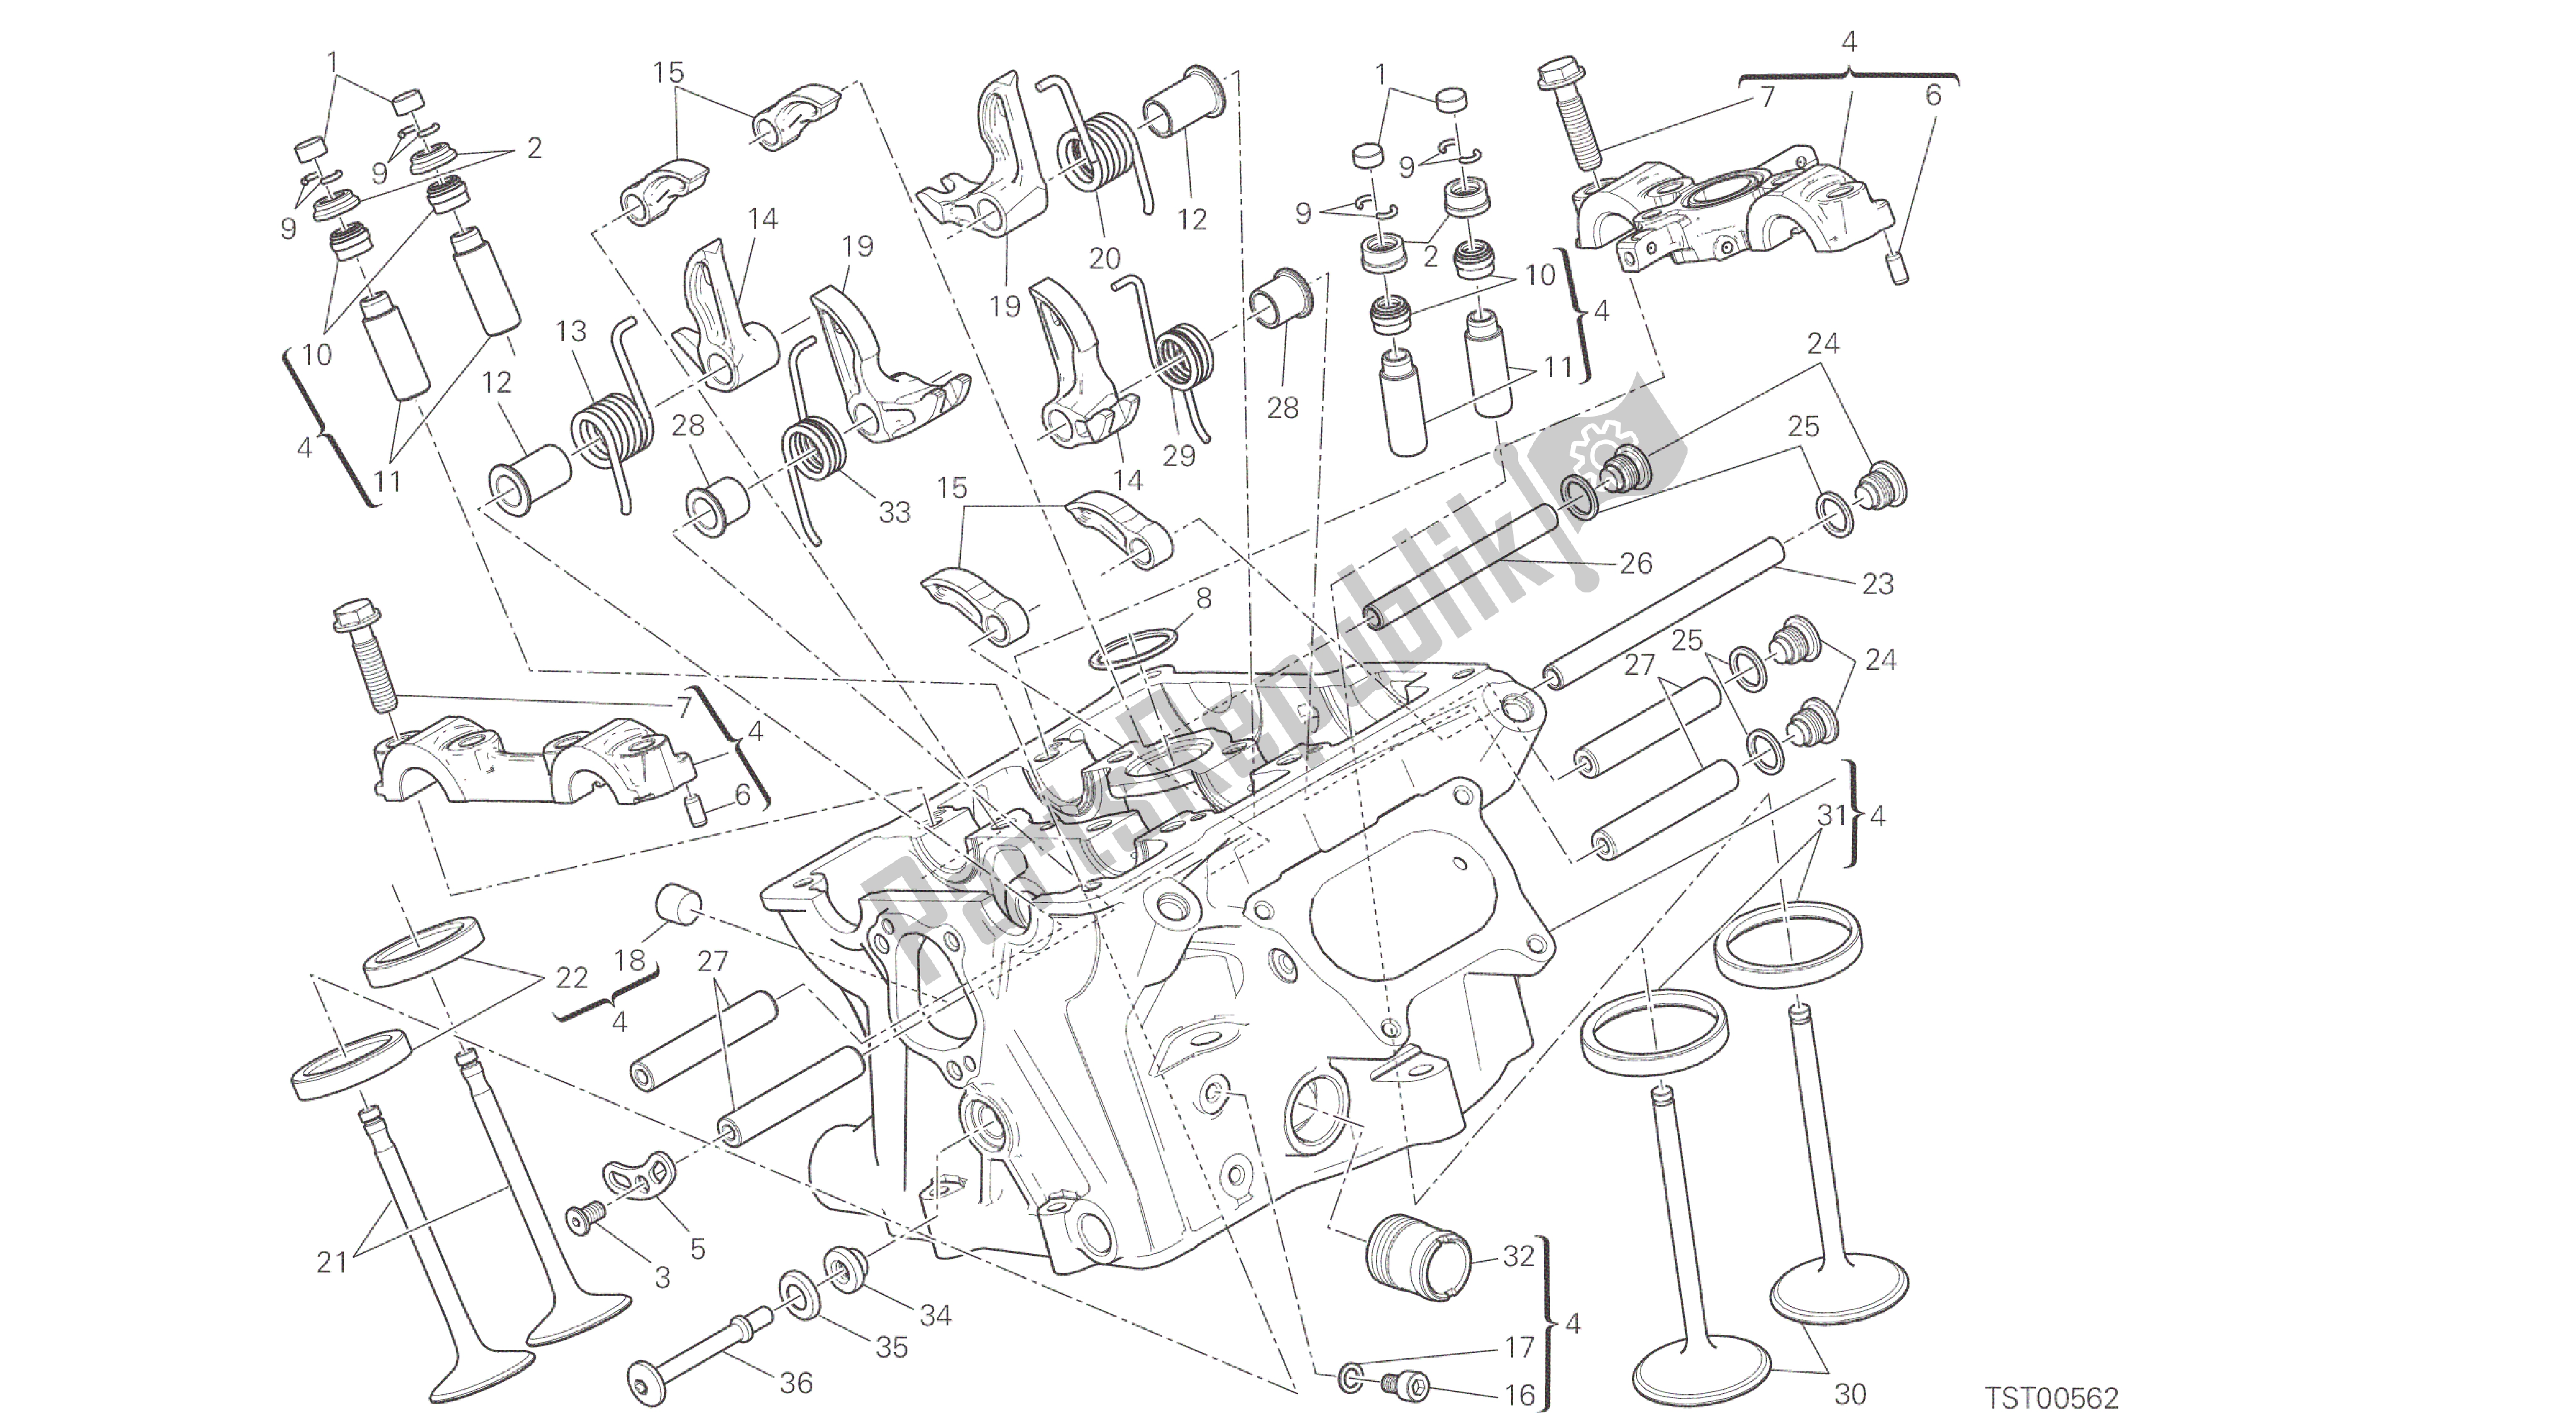 Alle onderdelen voor de Tekening 015 - Verticale Kop [mod: 959,959 Aws] Groepsmotor van de Ducati Panigale 959 2016